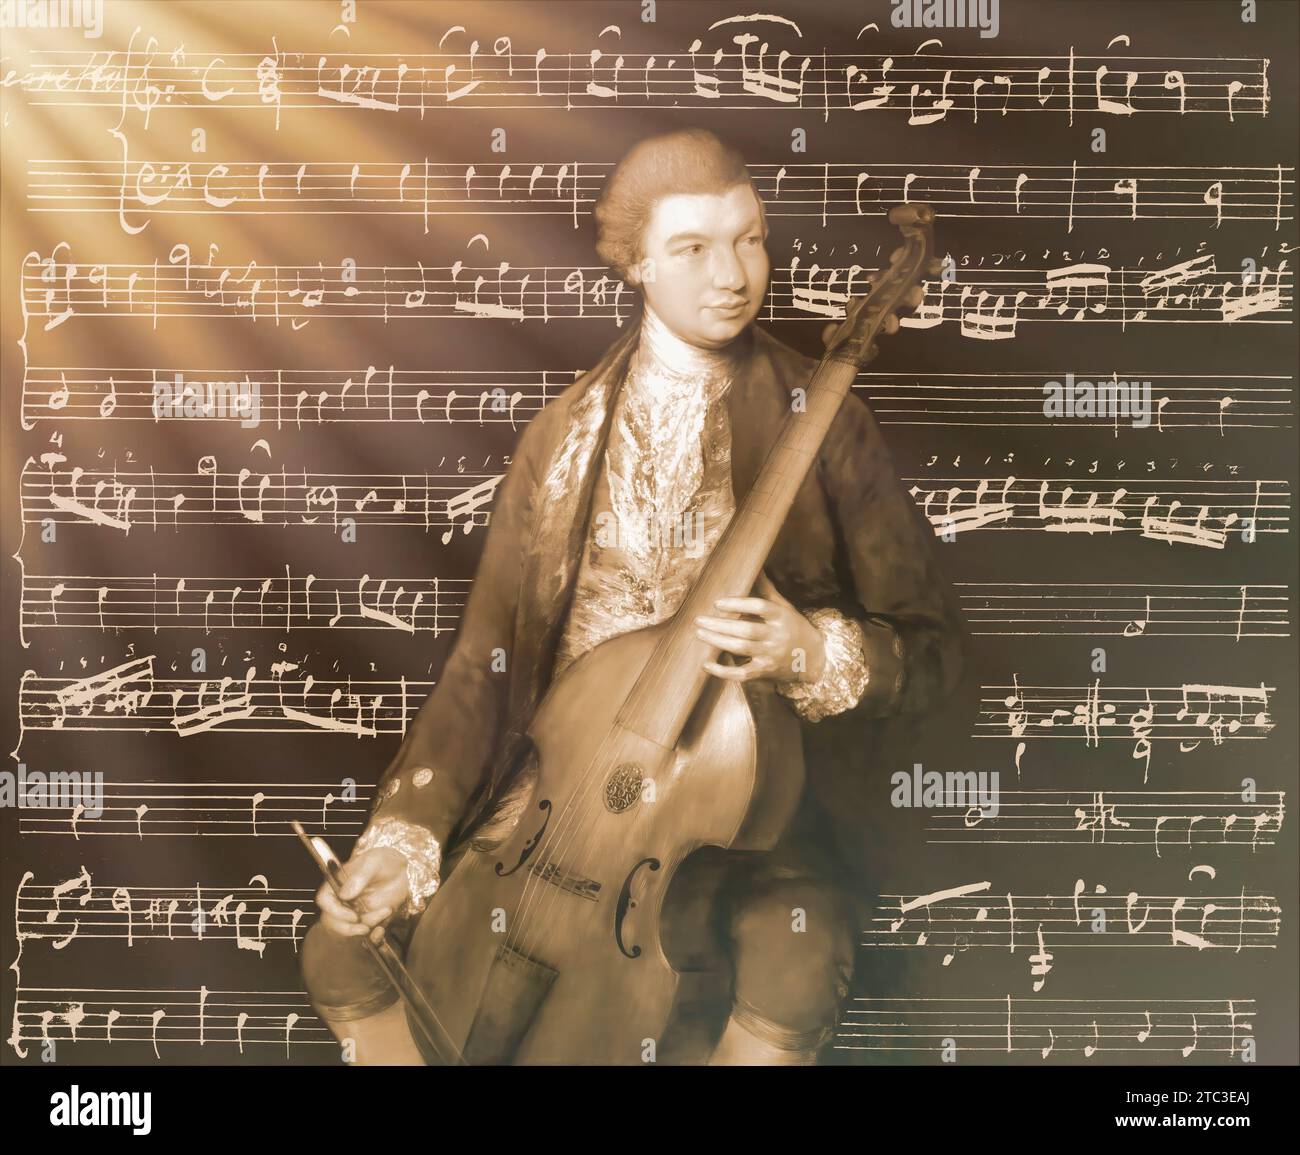 Carl Friedrich Abel, 1723 - 1787, compositore tedesco, edito digitalmente secondo un dipinto di Thomas Gainsborough, Sonate per viola da gamba e basso, scritto con la mano dell'autore Foto Stock